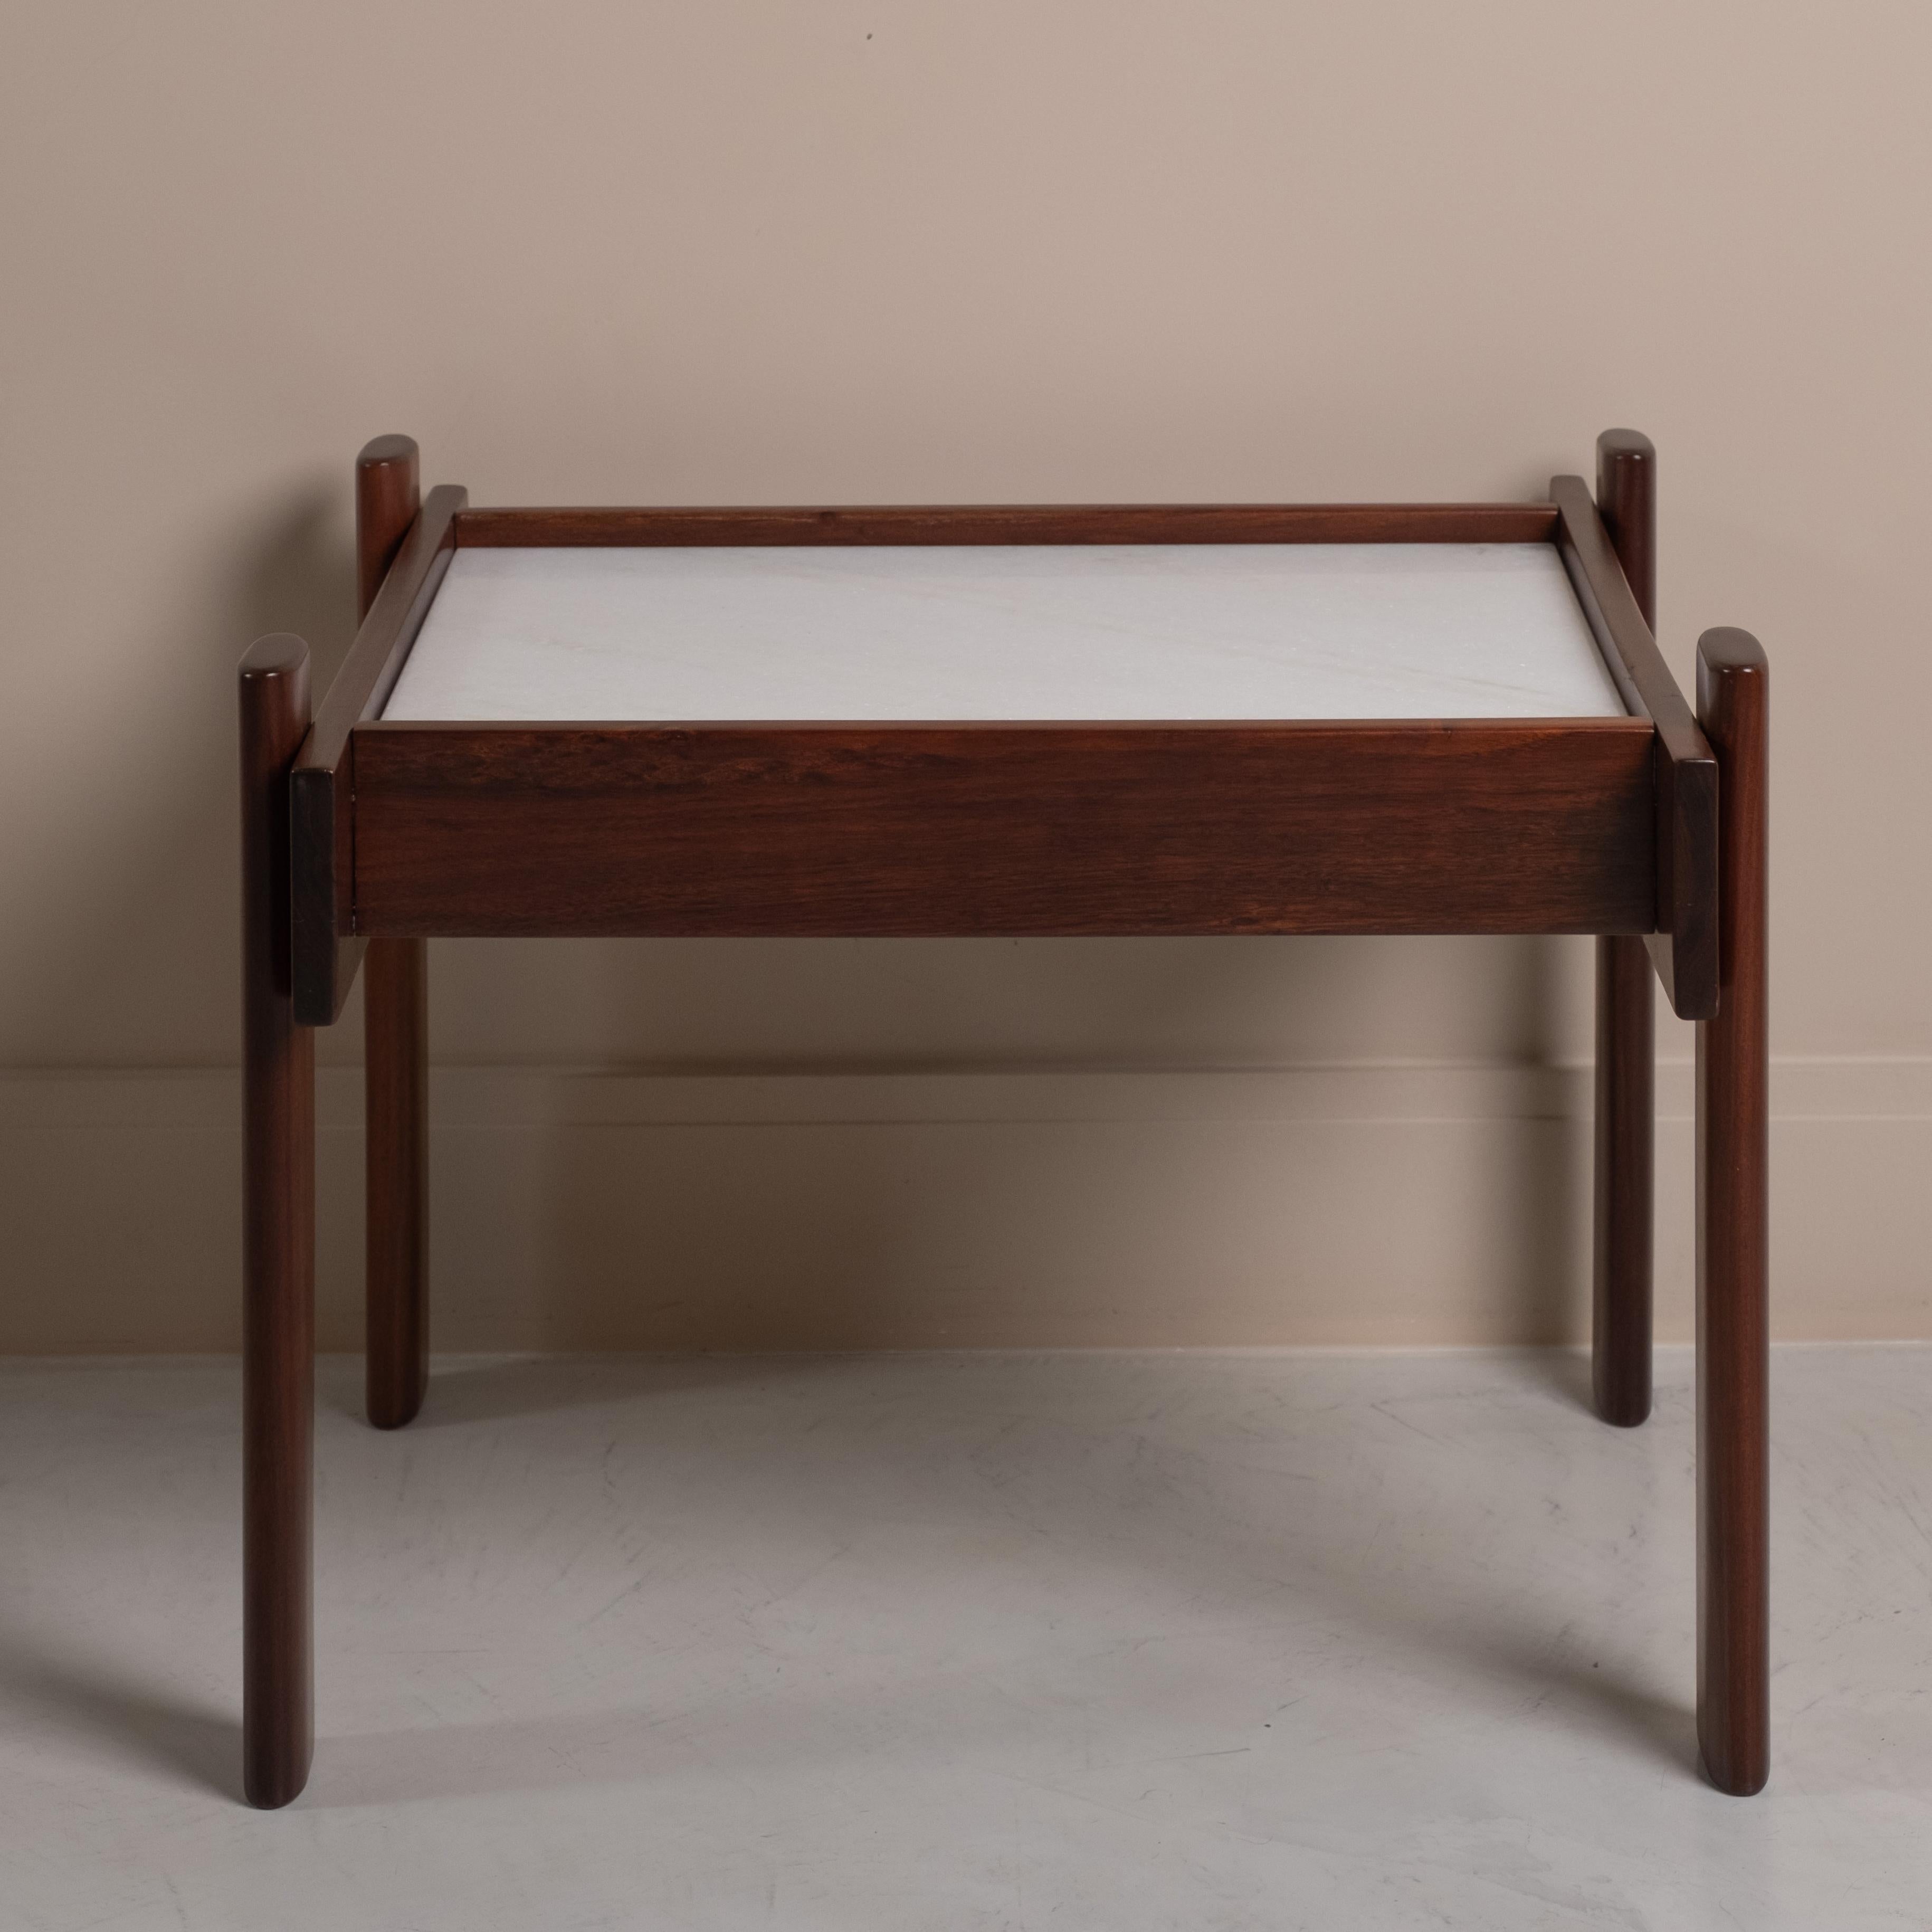 Cette magnifique table d'appoint conçue par Percival Lafer dans les années 60, allie design et fonctionnalité, offrant une touche d'élégance à votre espace. Composé d'un plateau en marbre reposant sur une structure en bois noble massif, il est